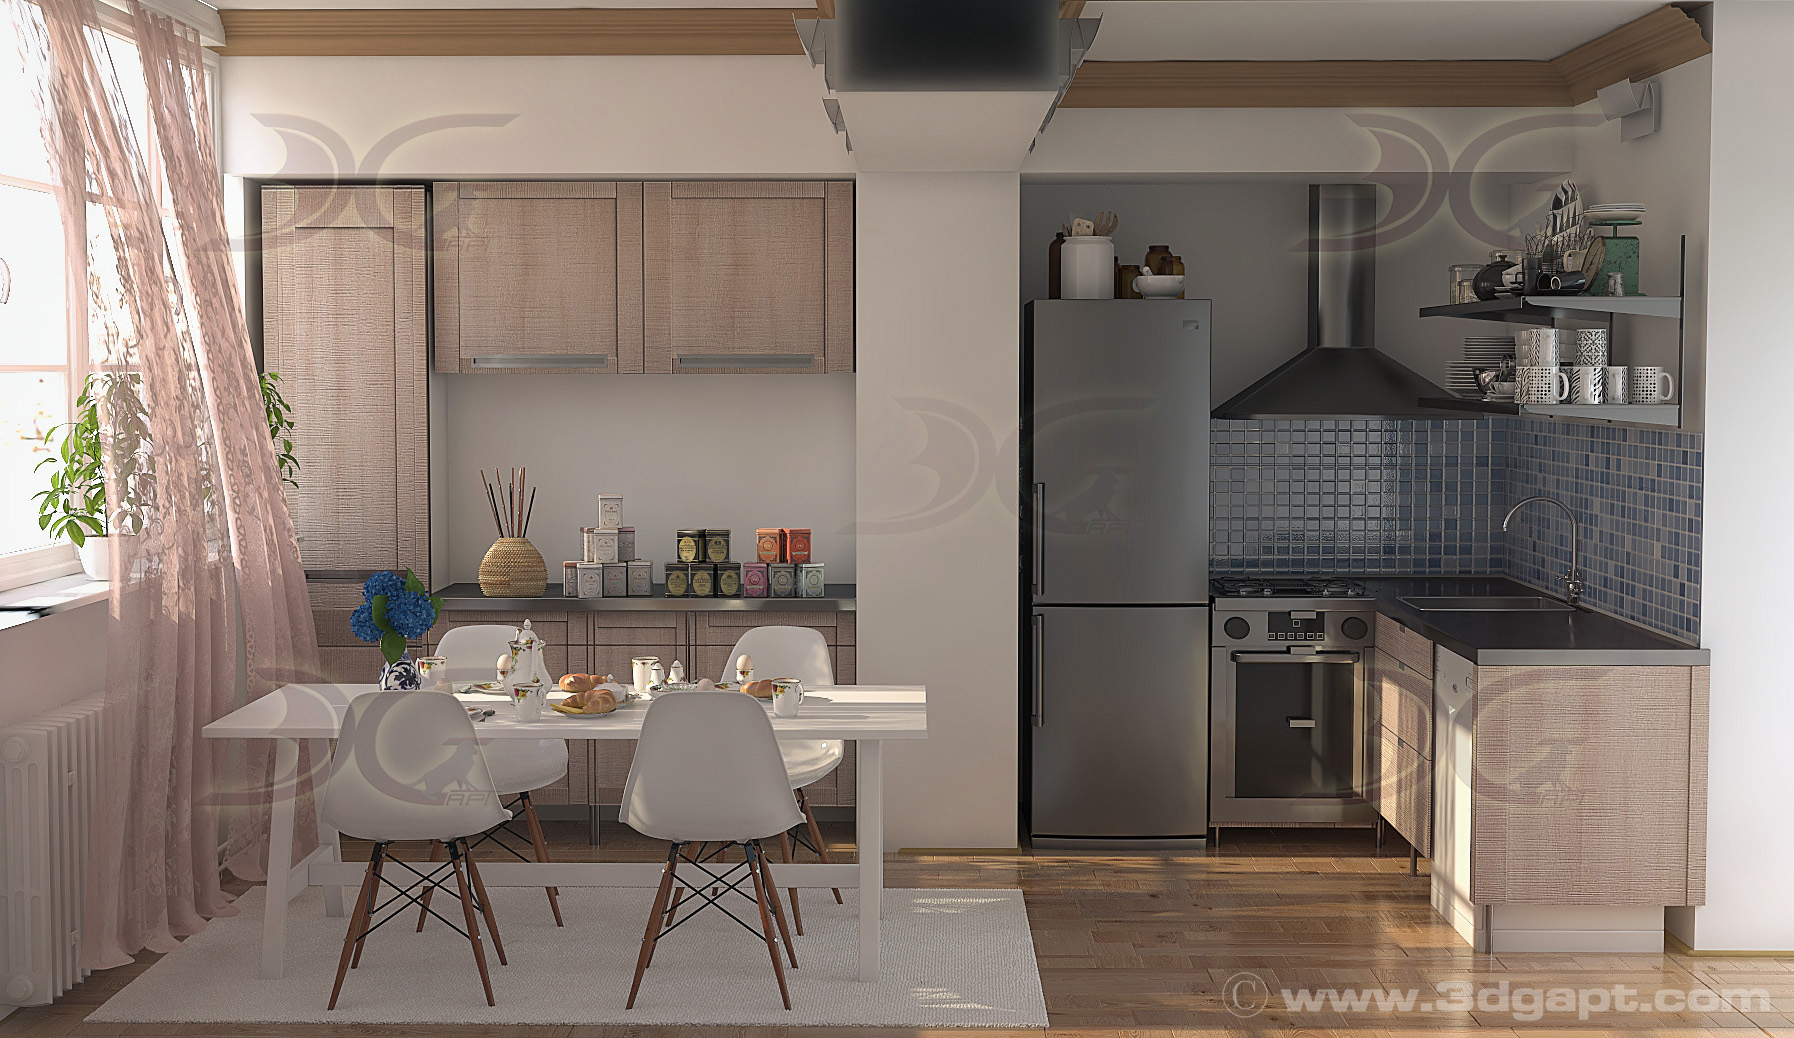 architecture interior kitchen-2versions 013